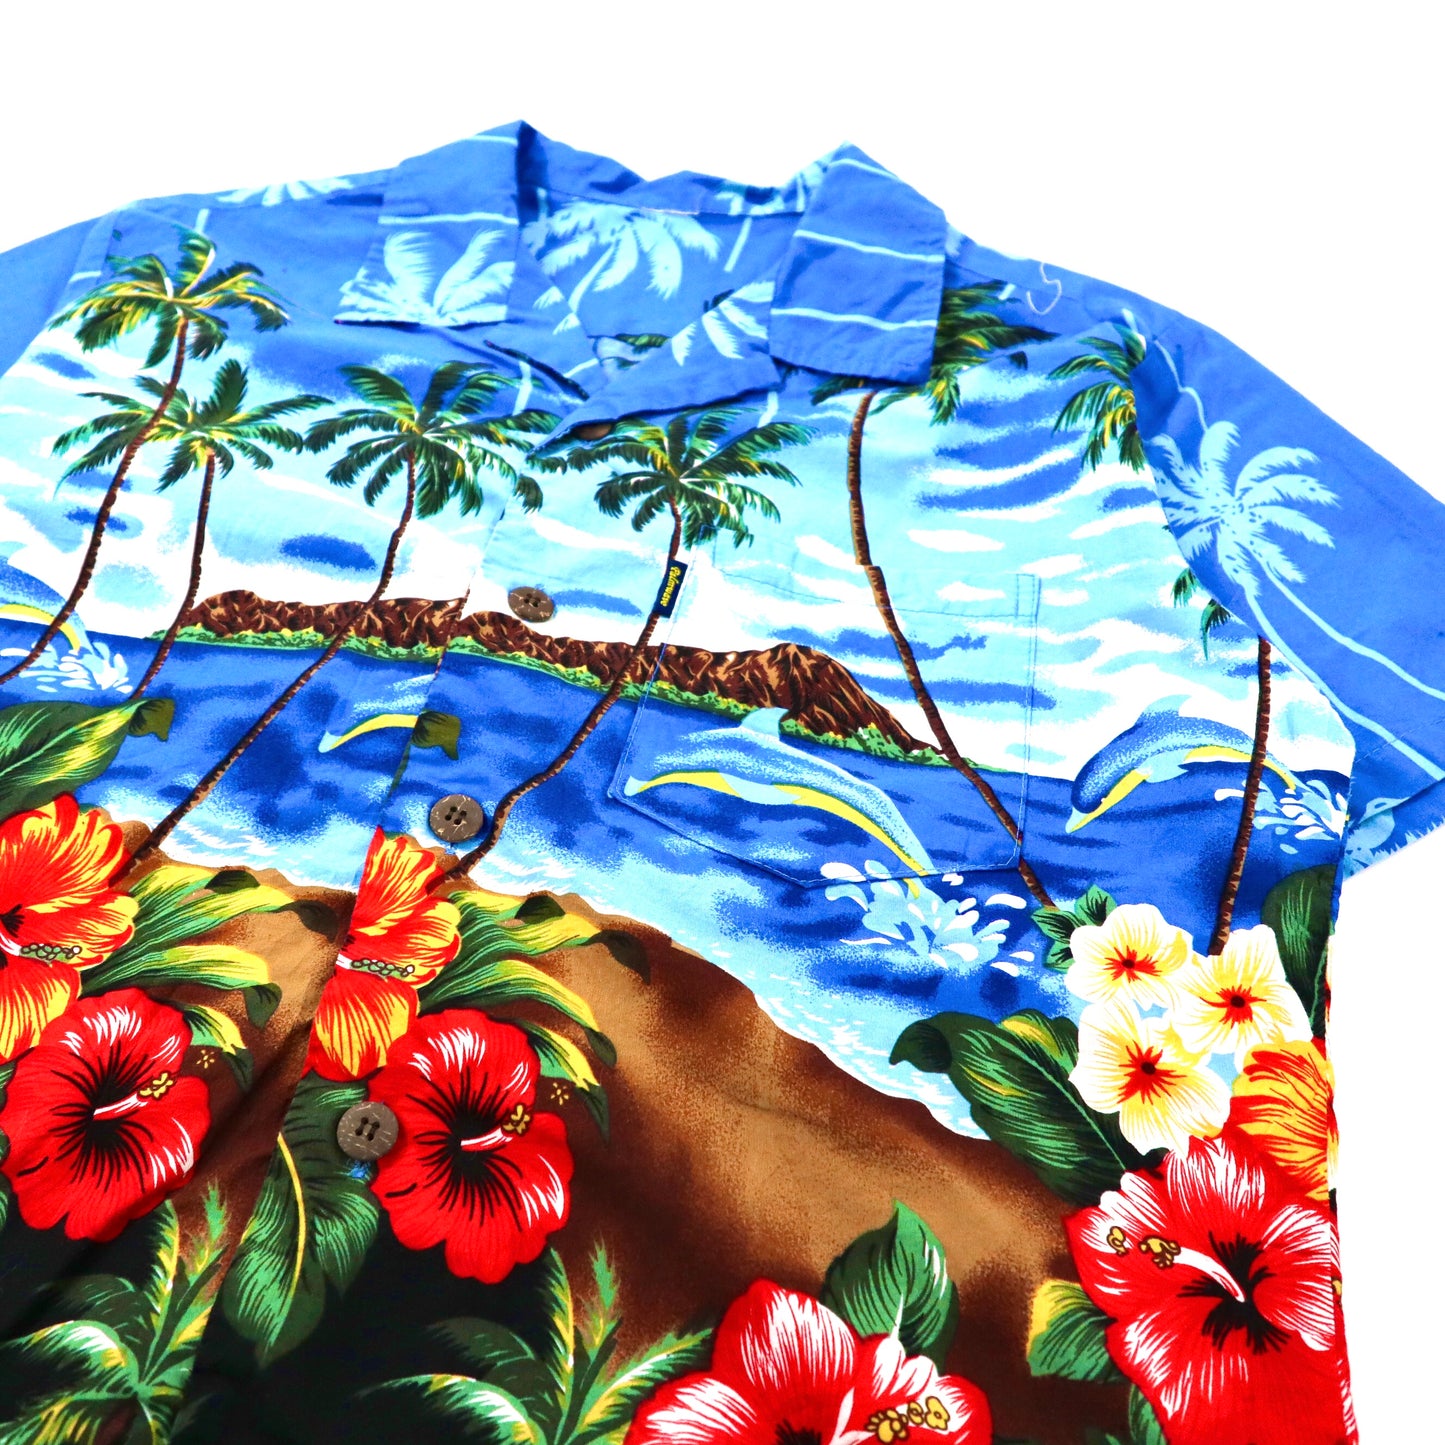 Palmwave アロハシャツ M ブルー コットン 総柄 ビーチ